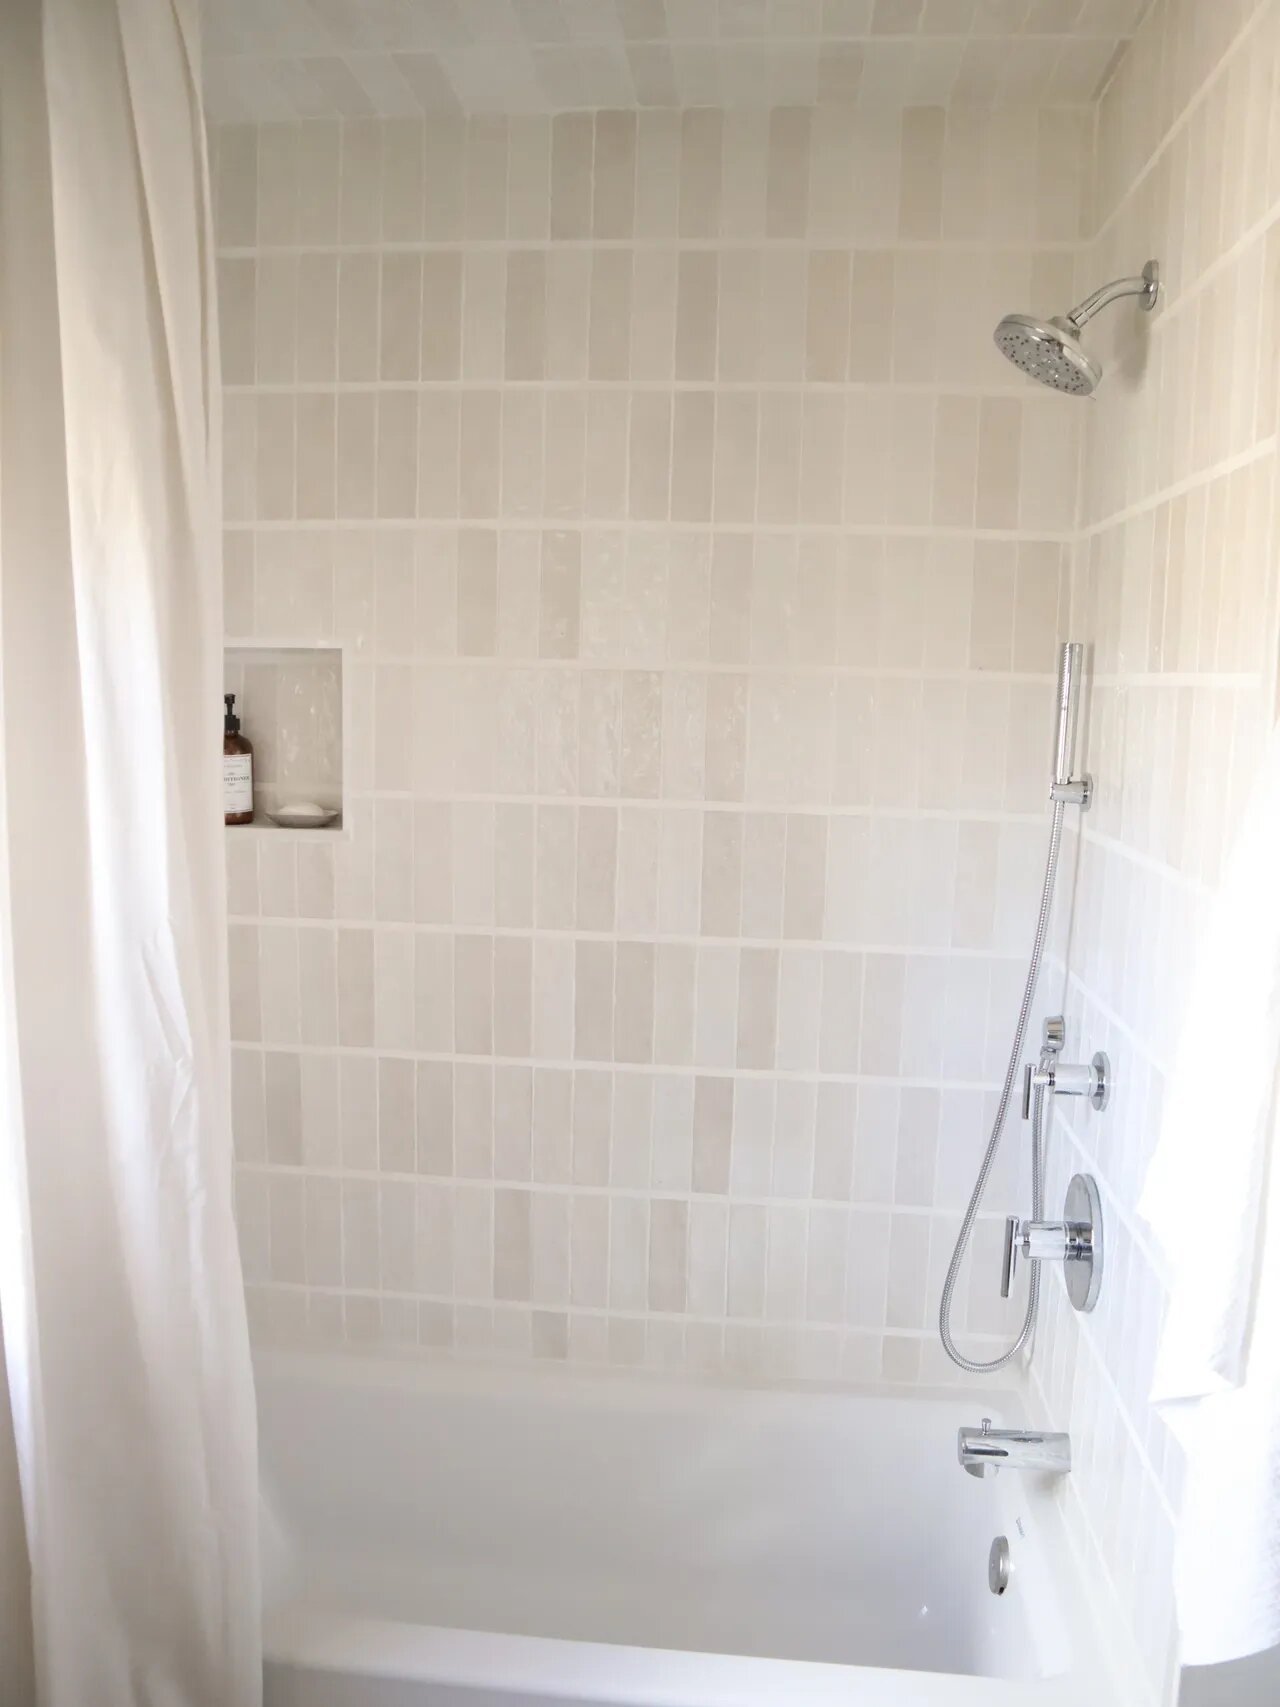 noire-motif-bathroom-makeover-shower-tile-after.jpg